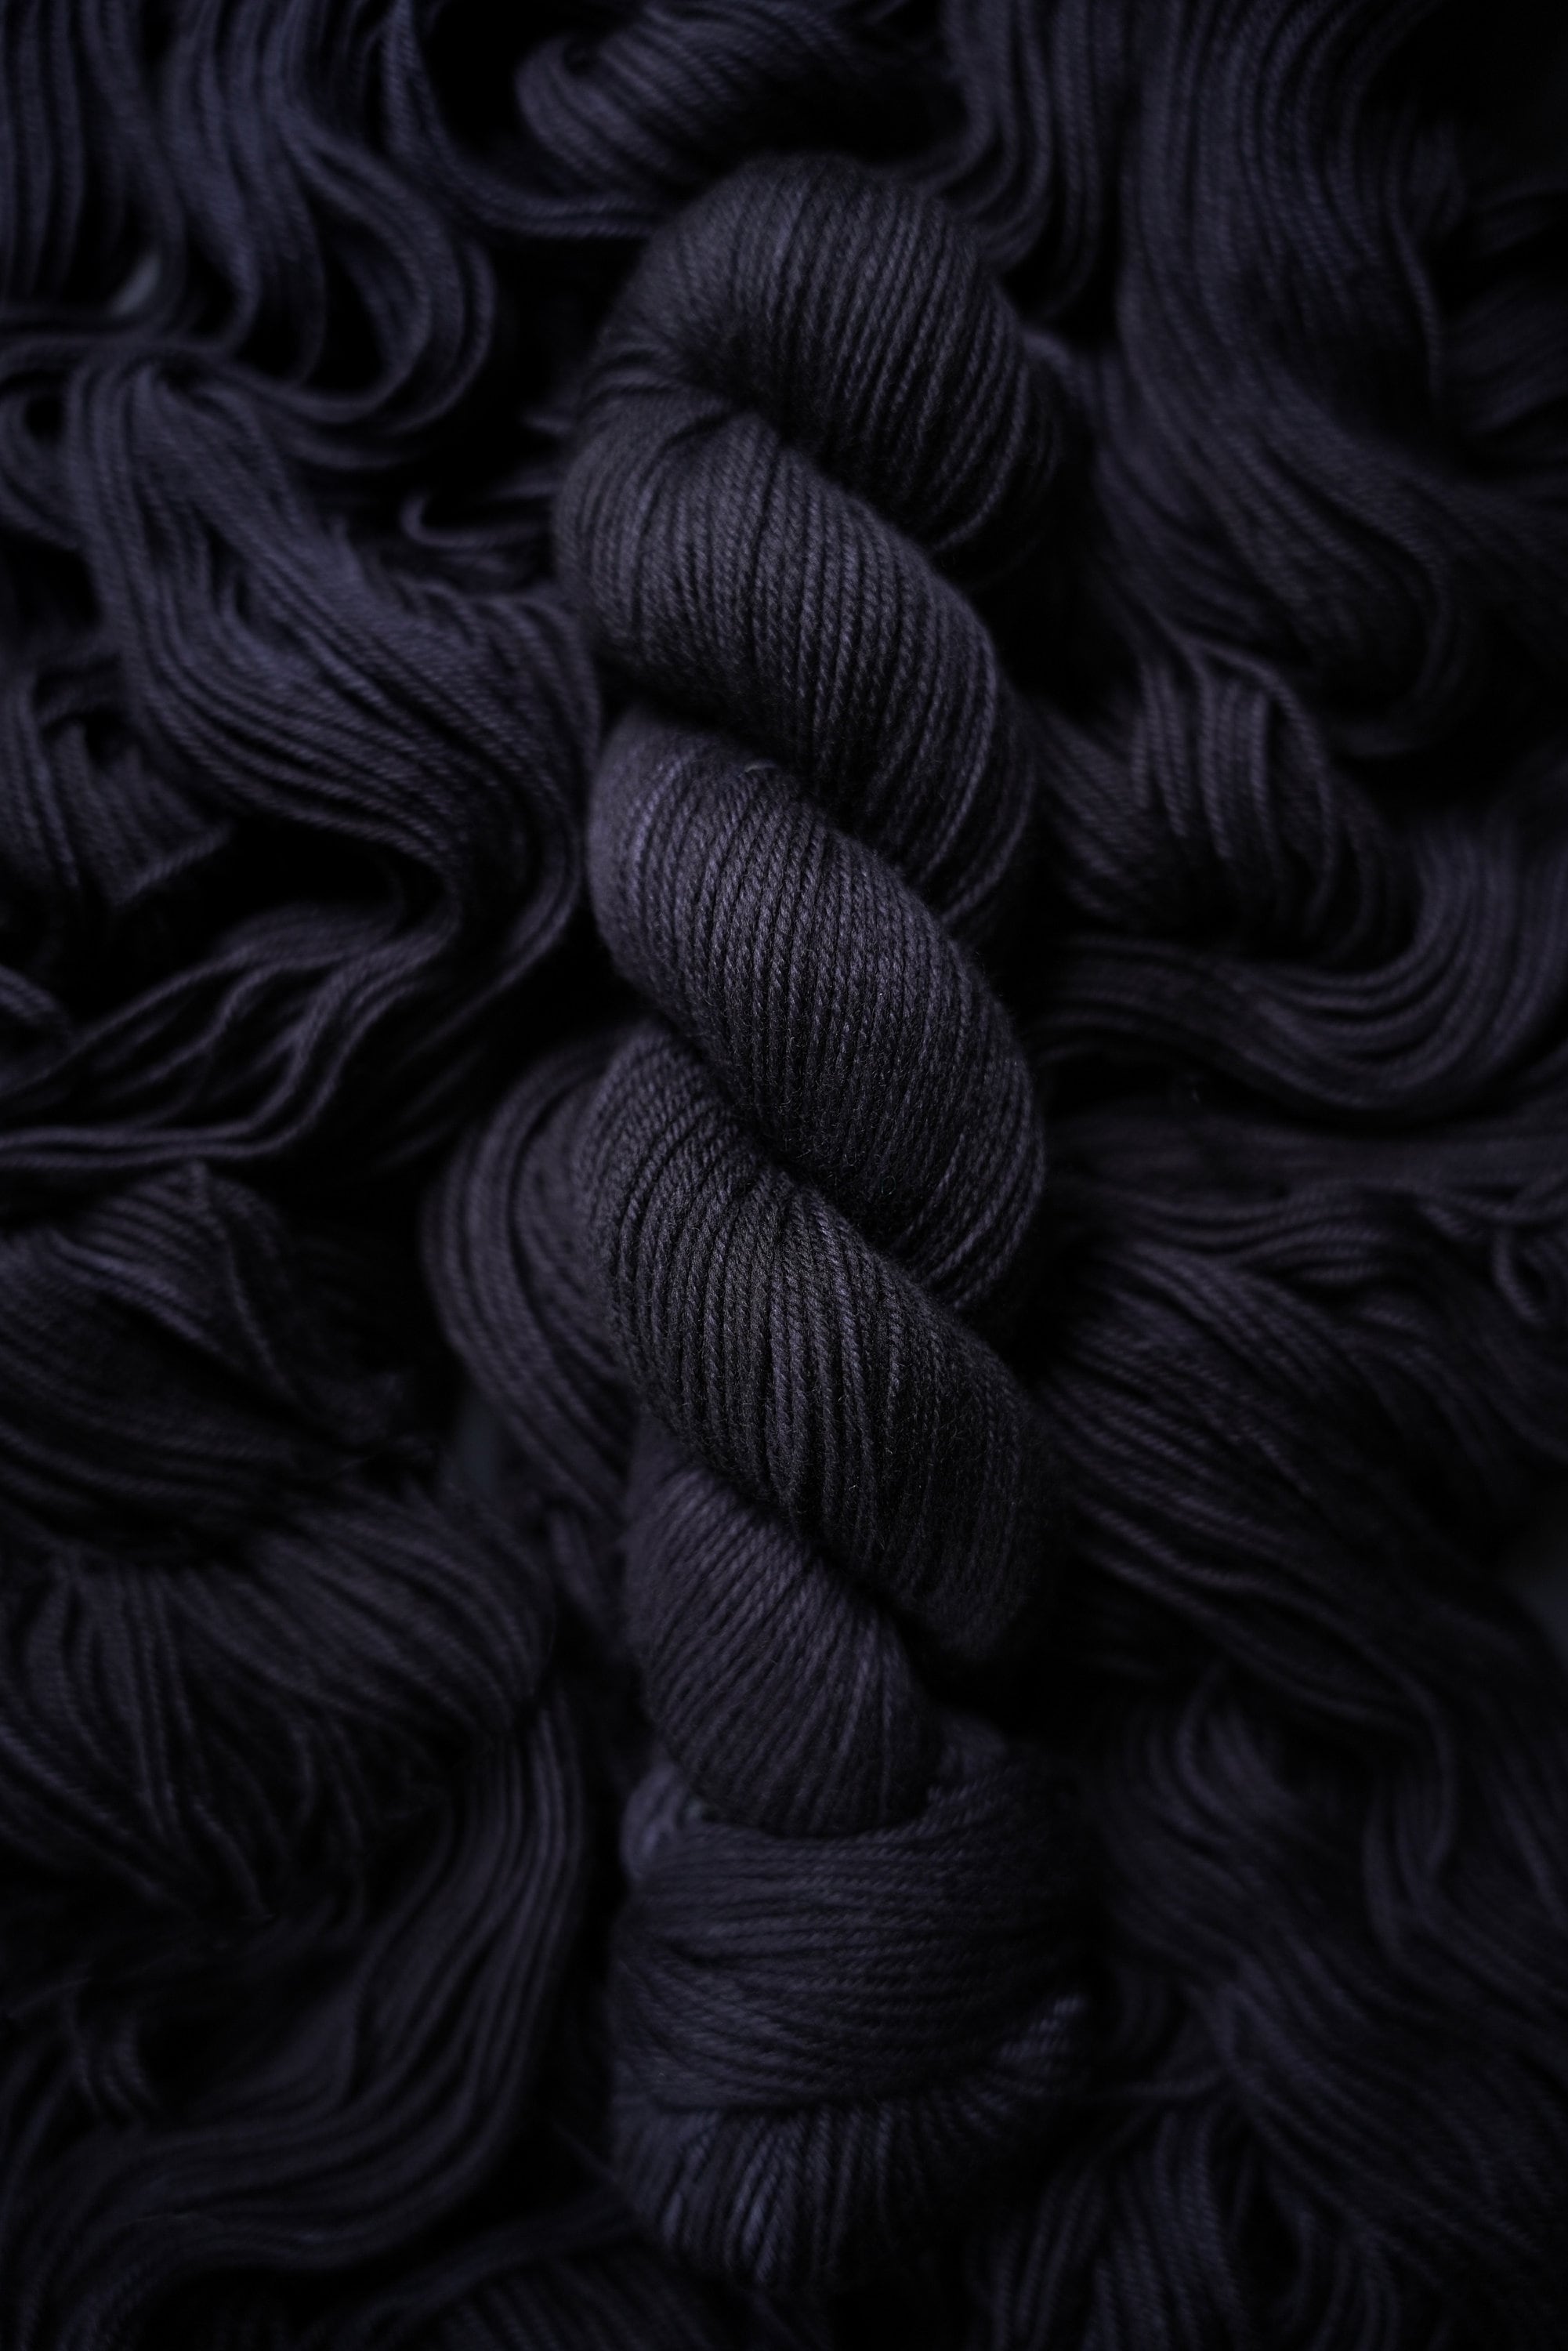 Hand Dyed Yarn, Void, Callisto Sock - 4 ply - 75/25 Merino Nylon  Fingering Weight